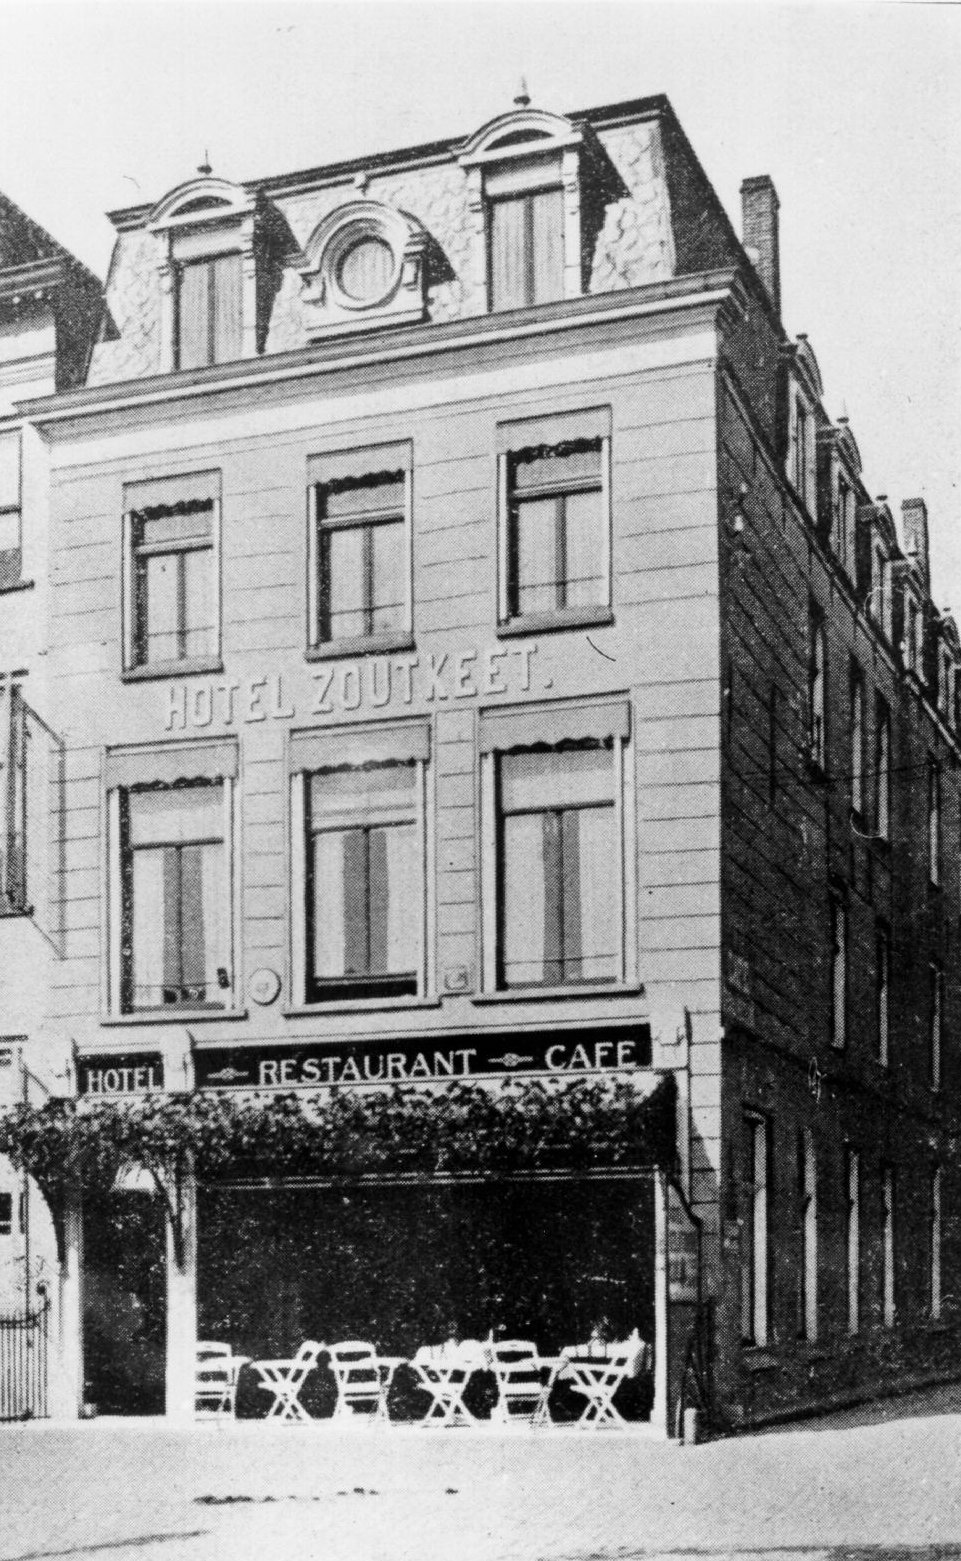 Hotel De Zoutkeet aan de Grote Markt, 1920.